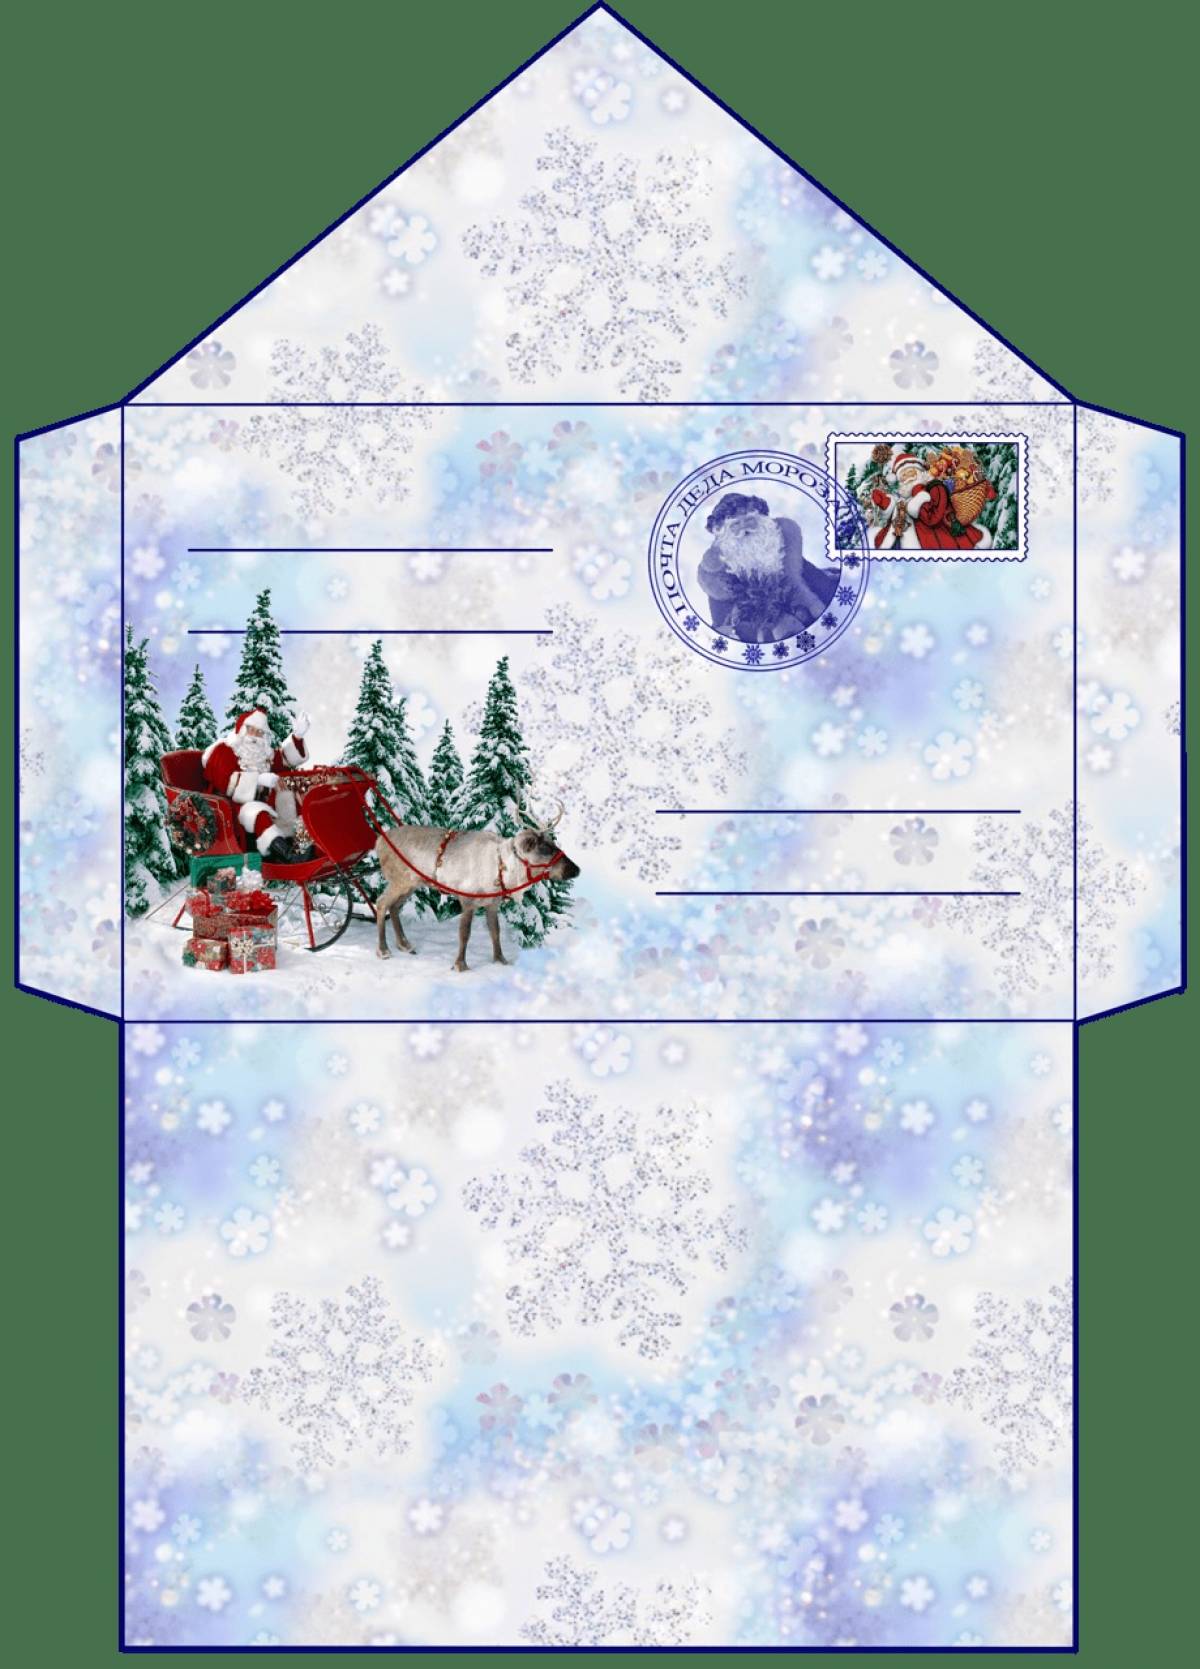 Glamor envelope with santa's letter